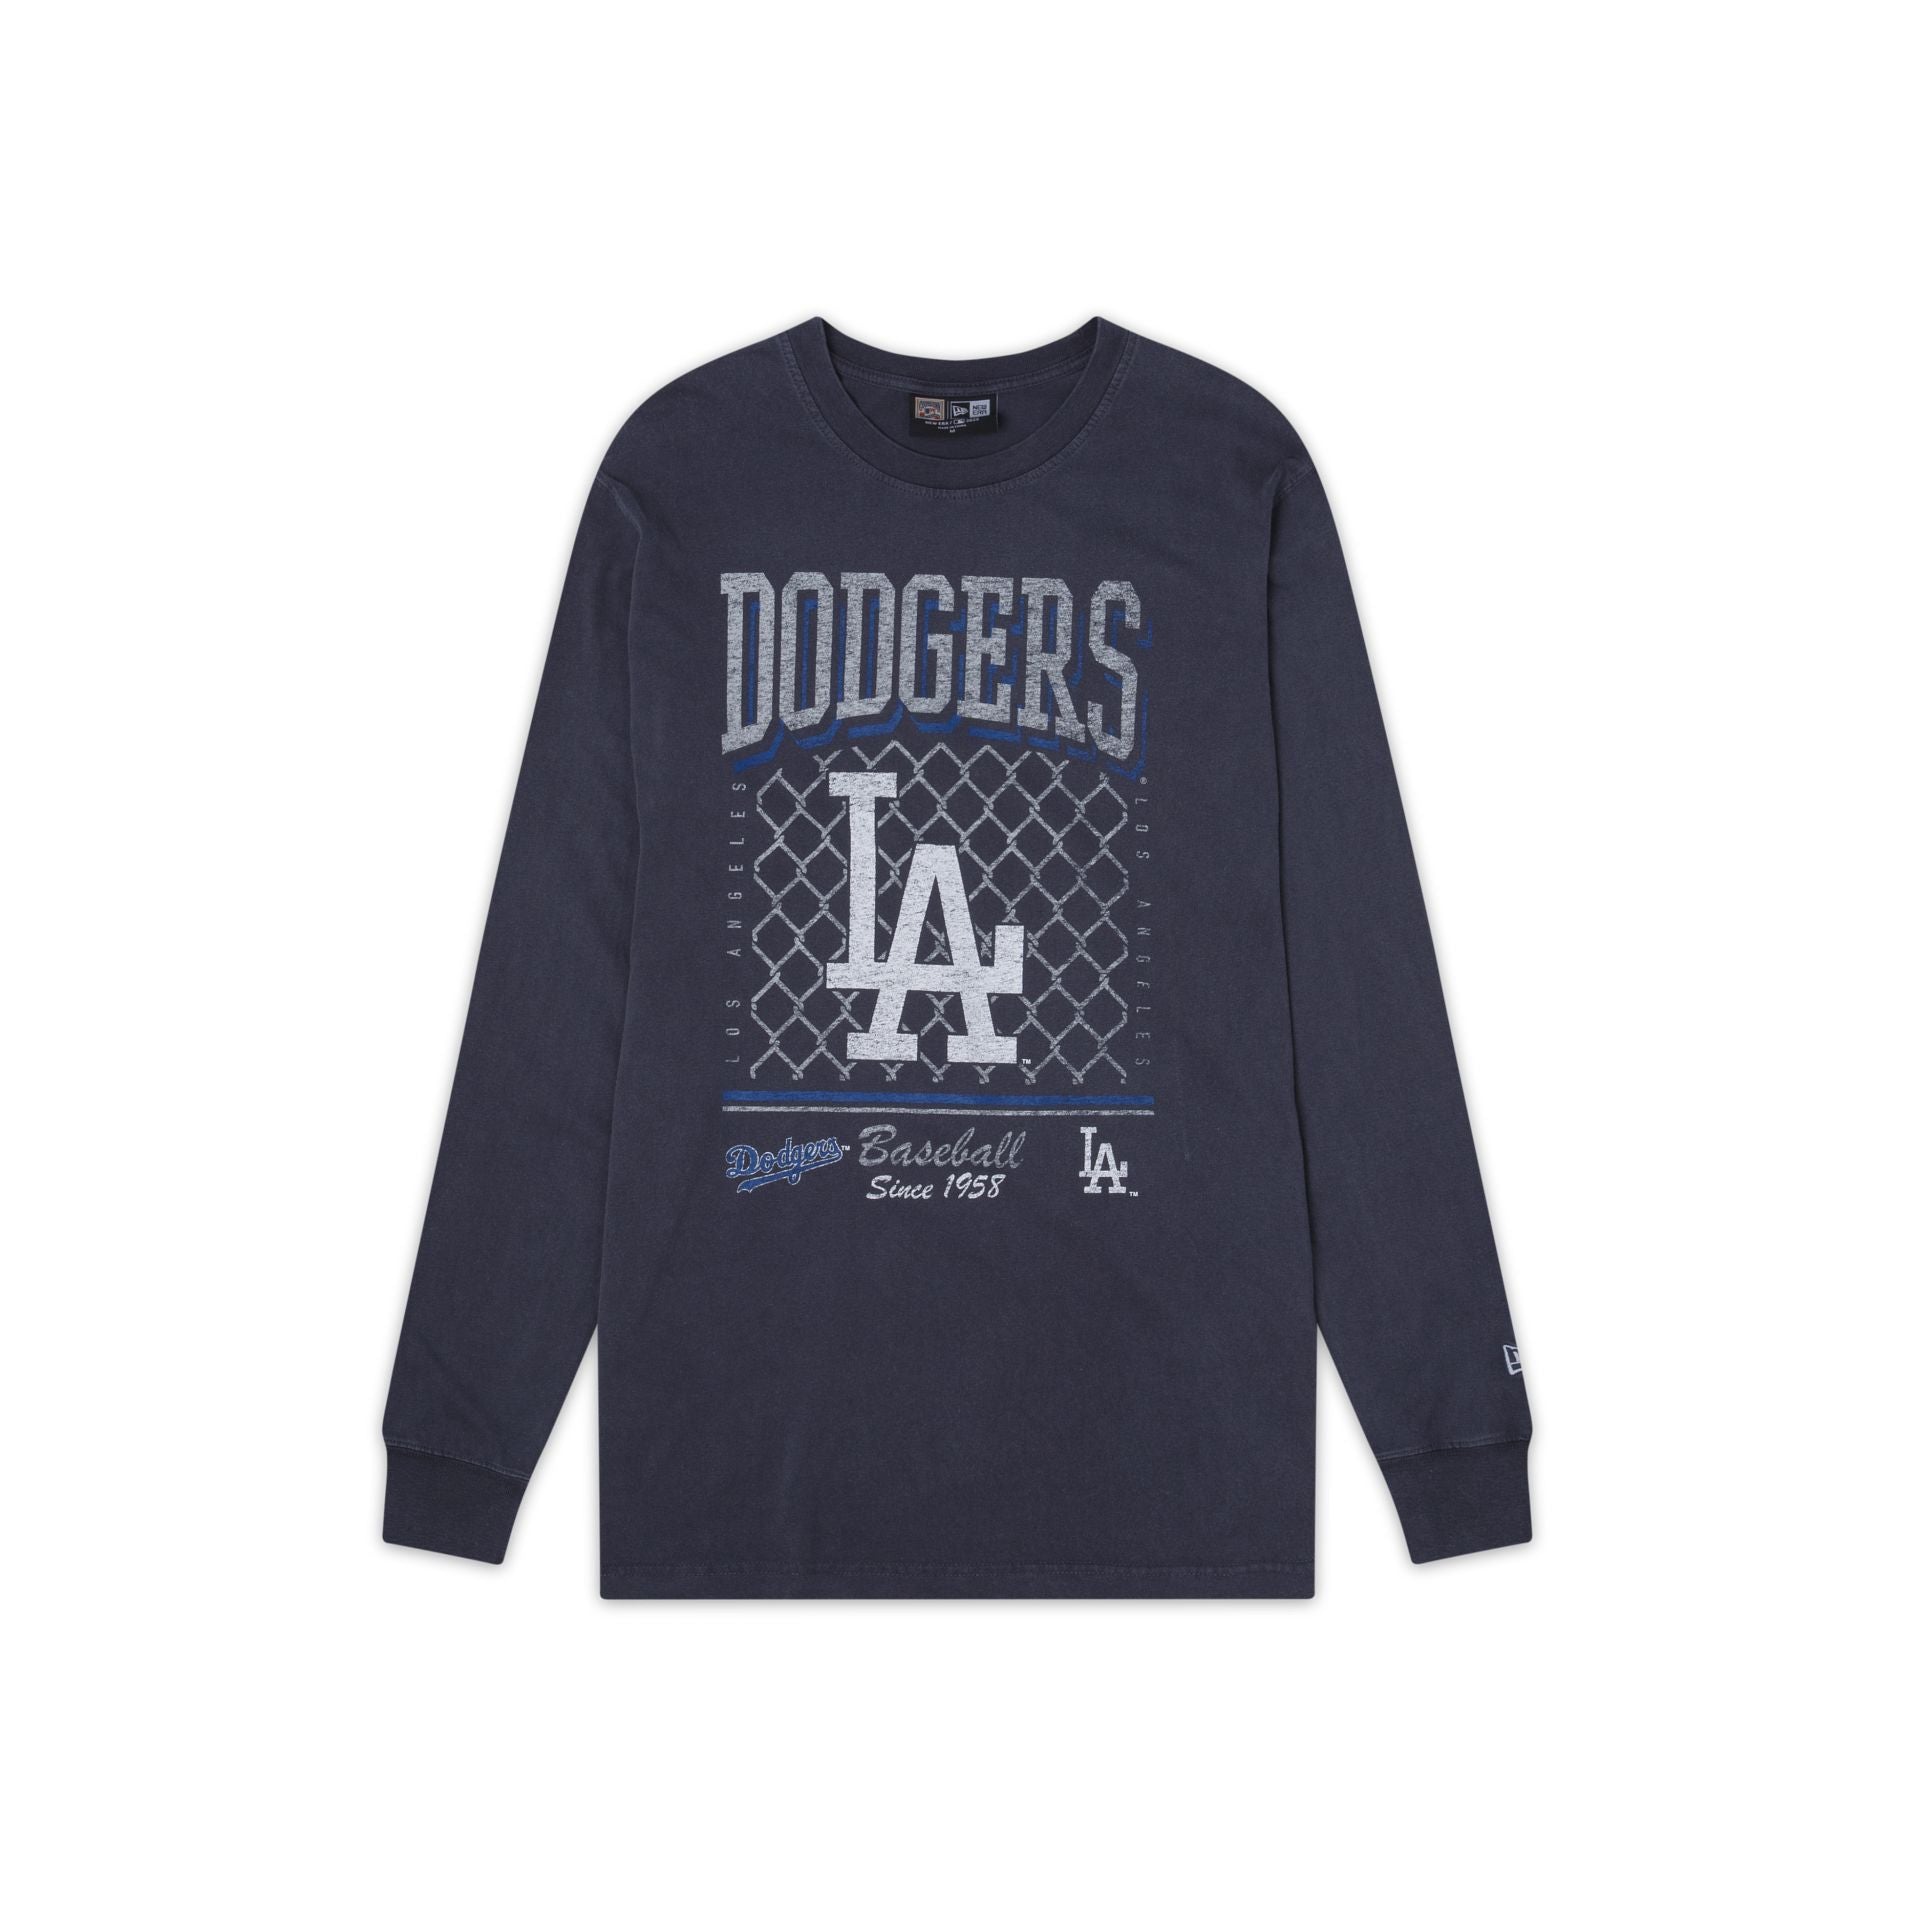 New Era Oschspt Long Sleeve T-Shirt - Dodgers